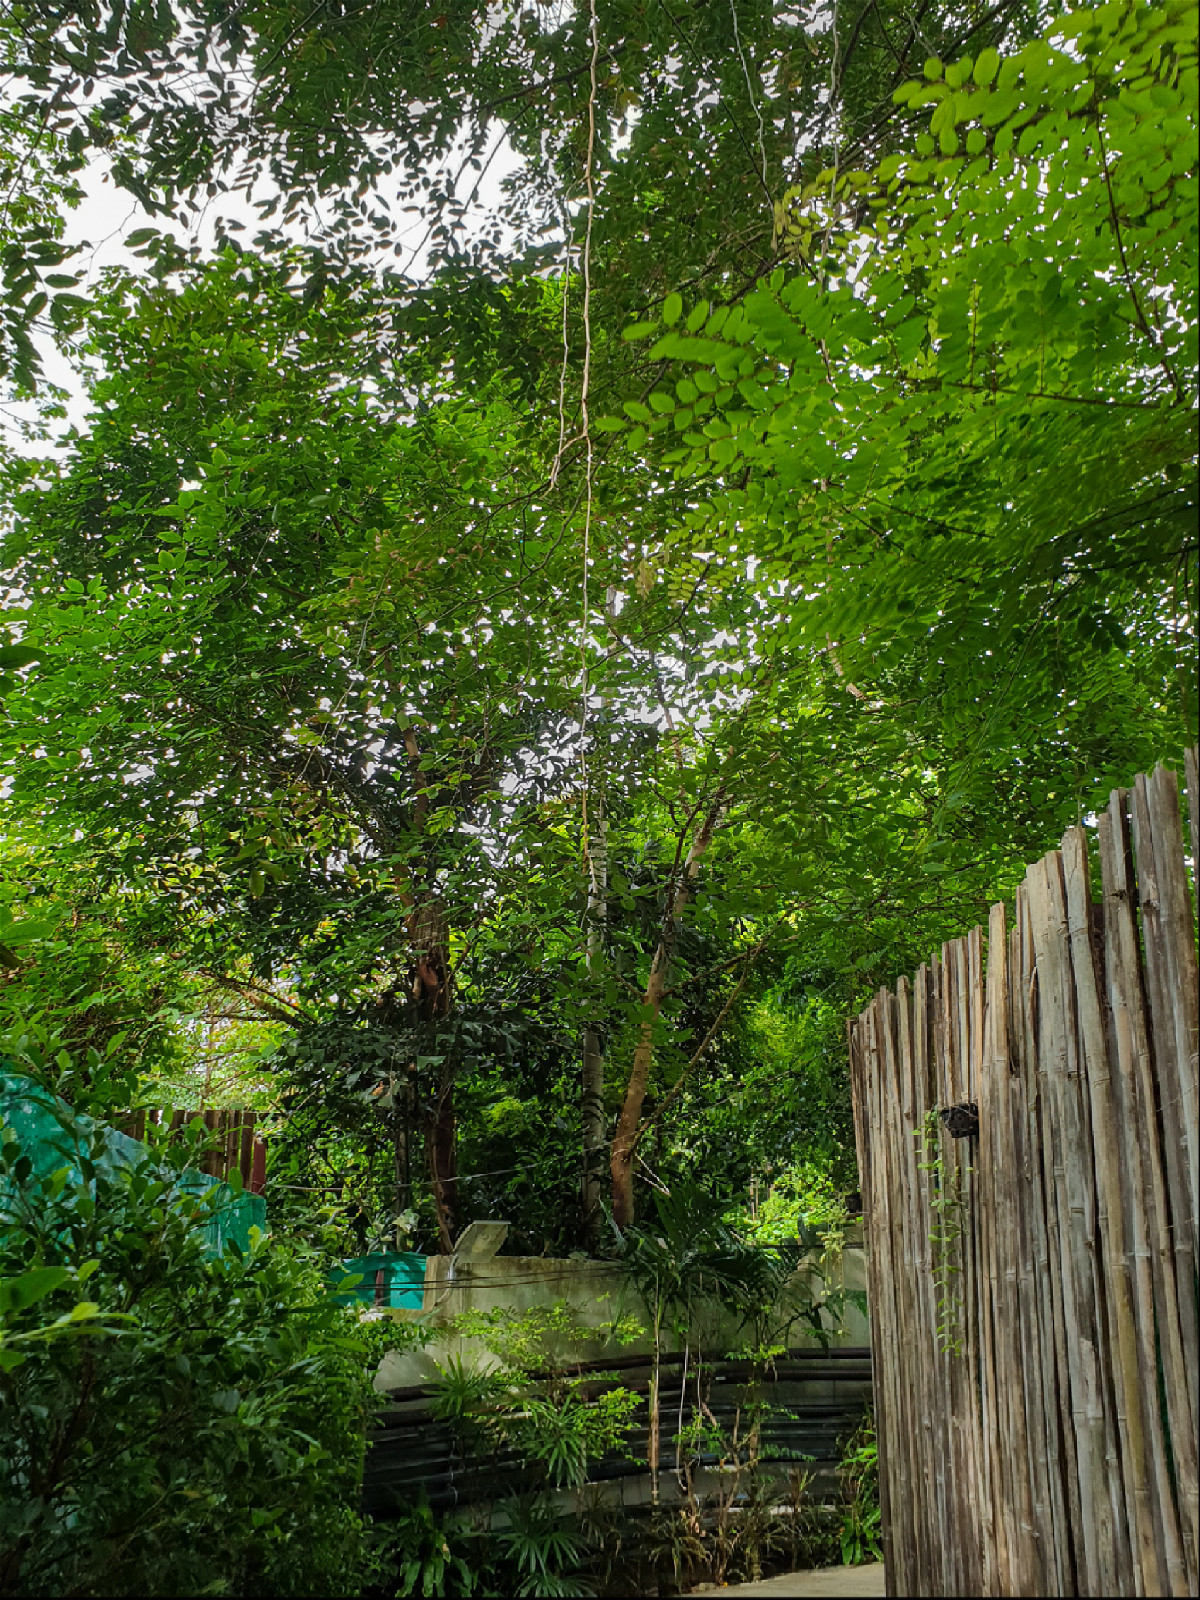 лианы свисающие с деревьев рядом с бамбуковым забором сада